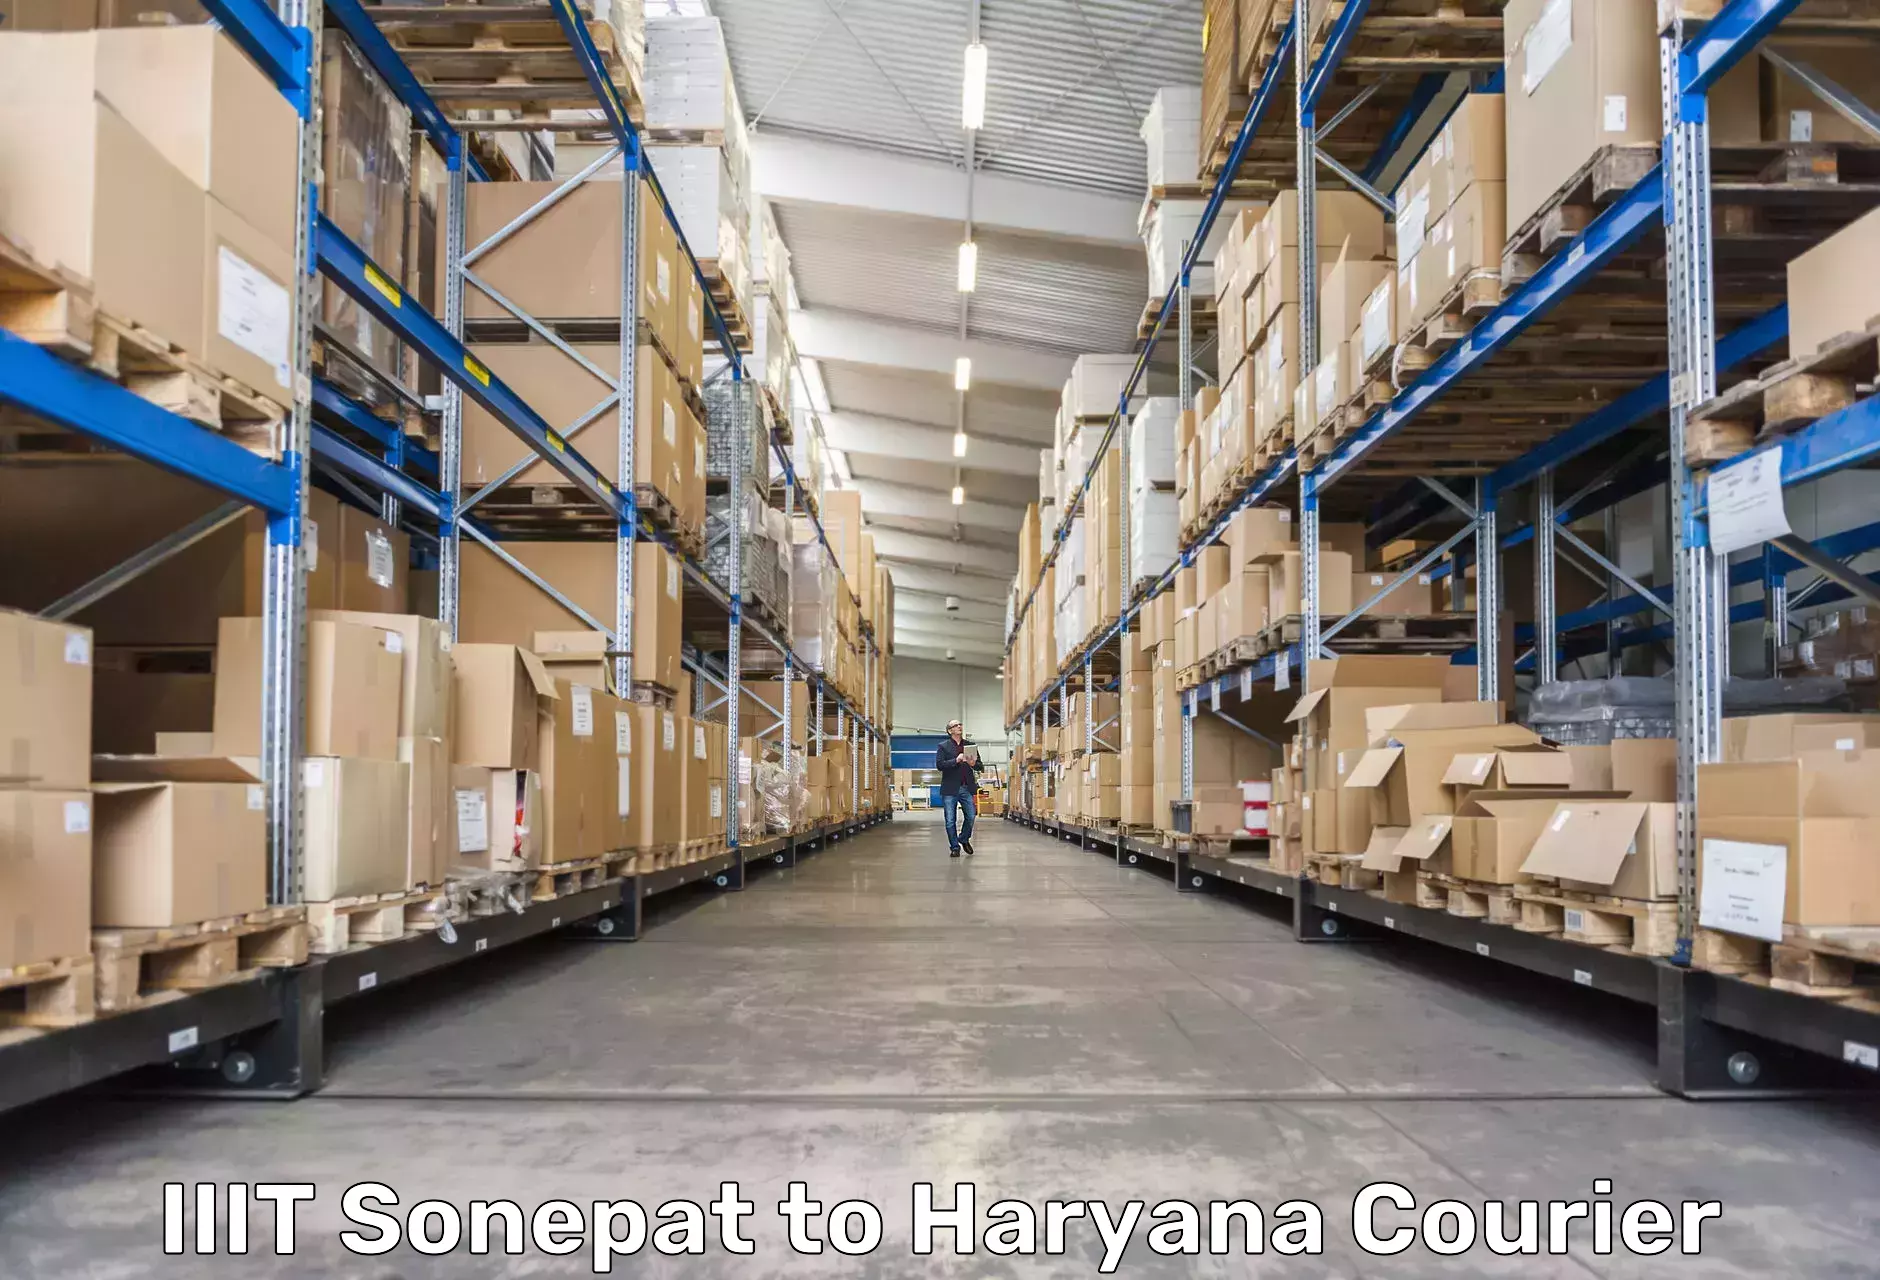 Punctual parcel services IIIT Sonepat to Haryana